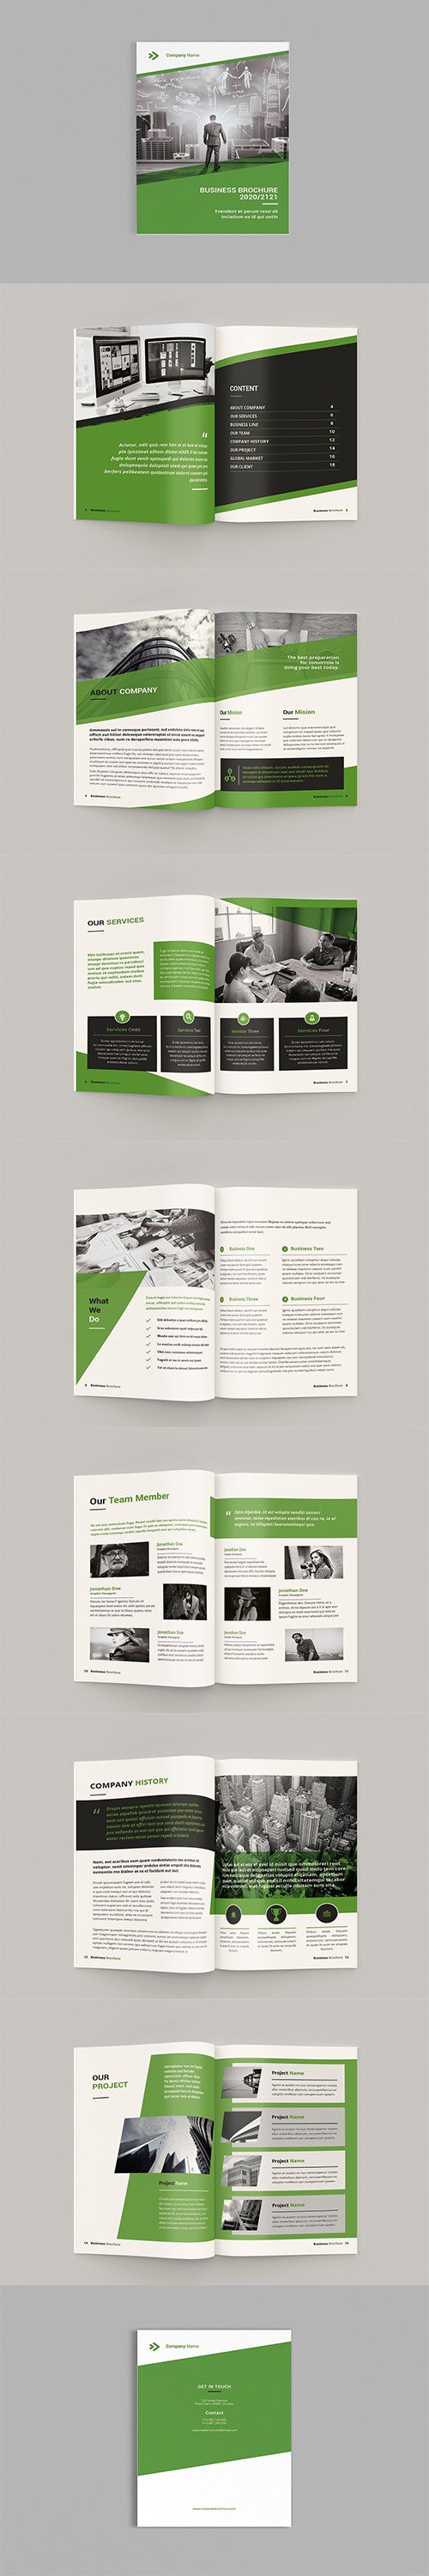 Bizy - A4 Business Brochure